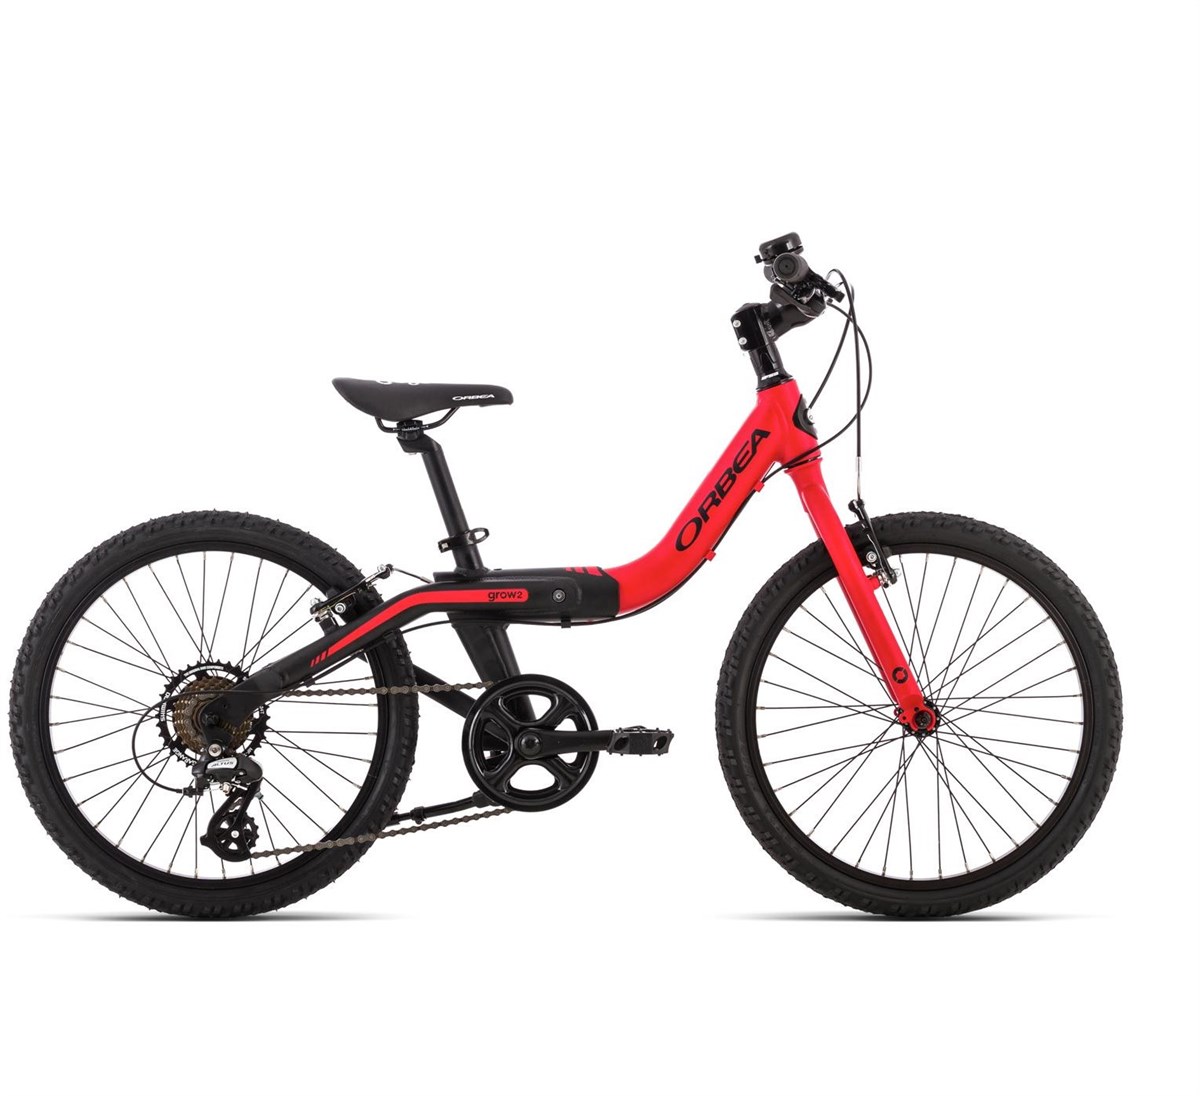 Orbea Grow 2 7V 20W 2015 - Kids Bike product image